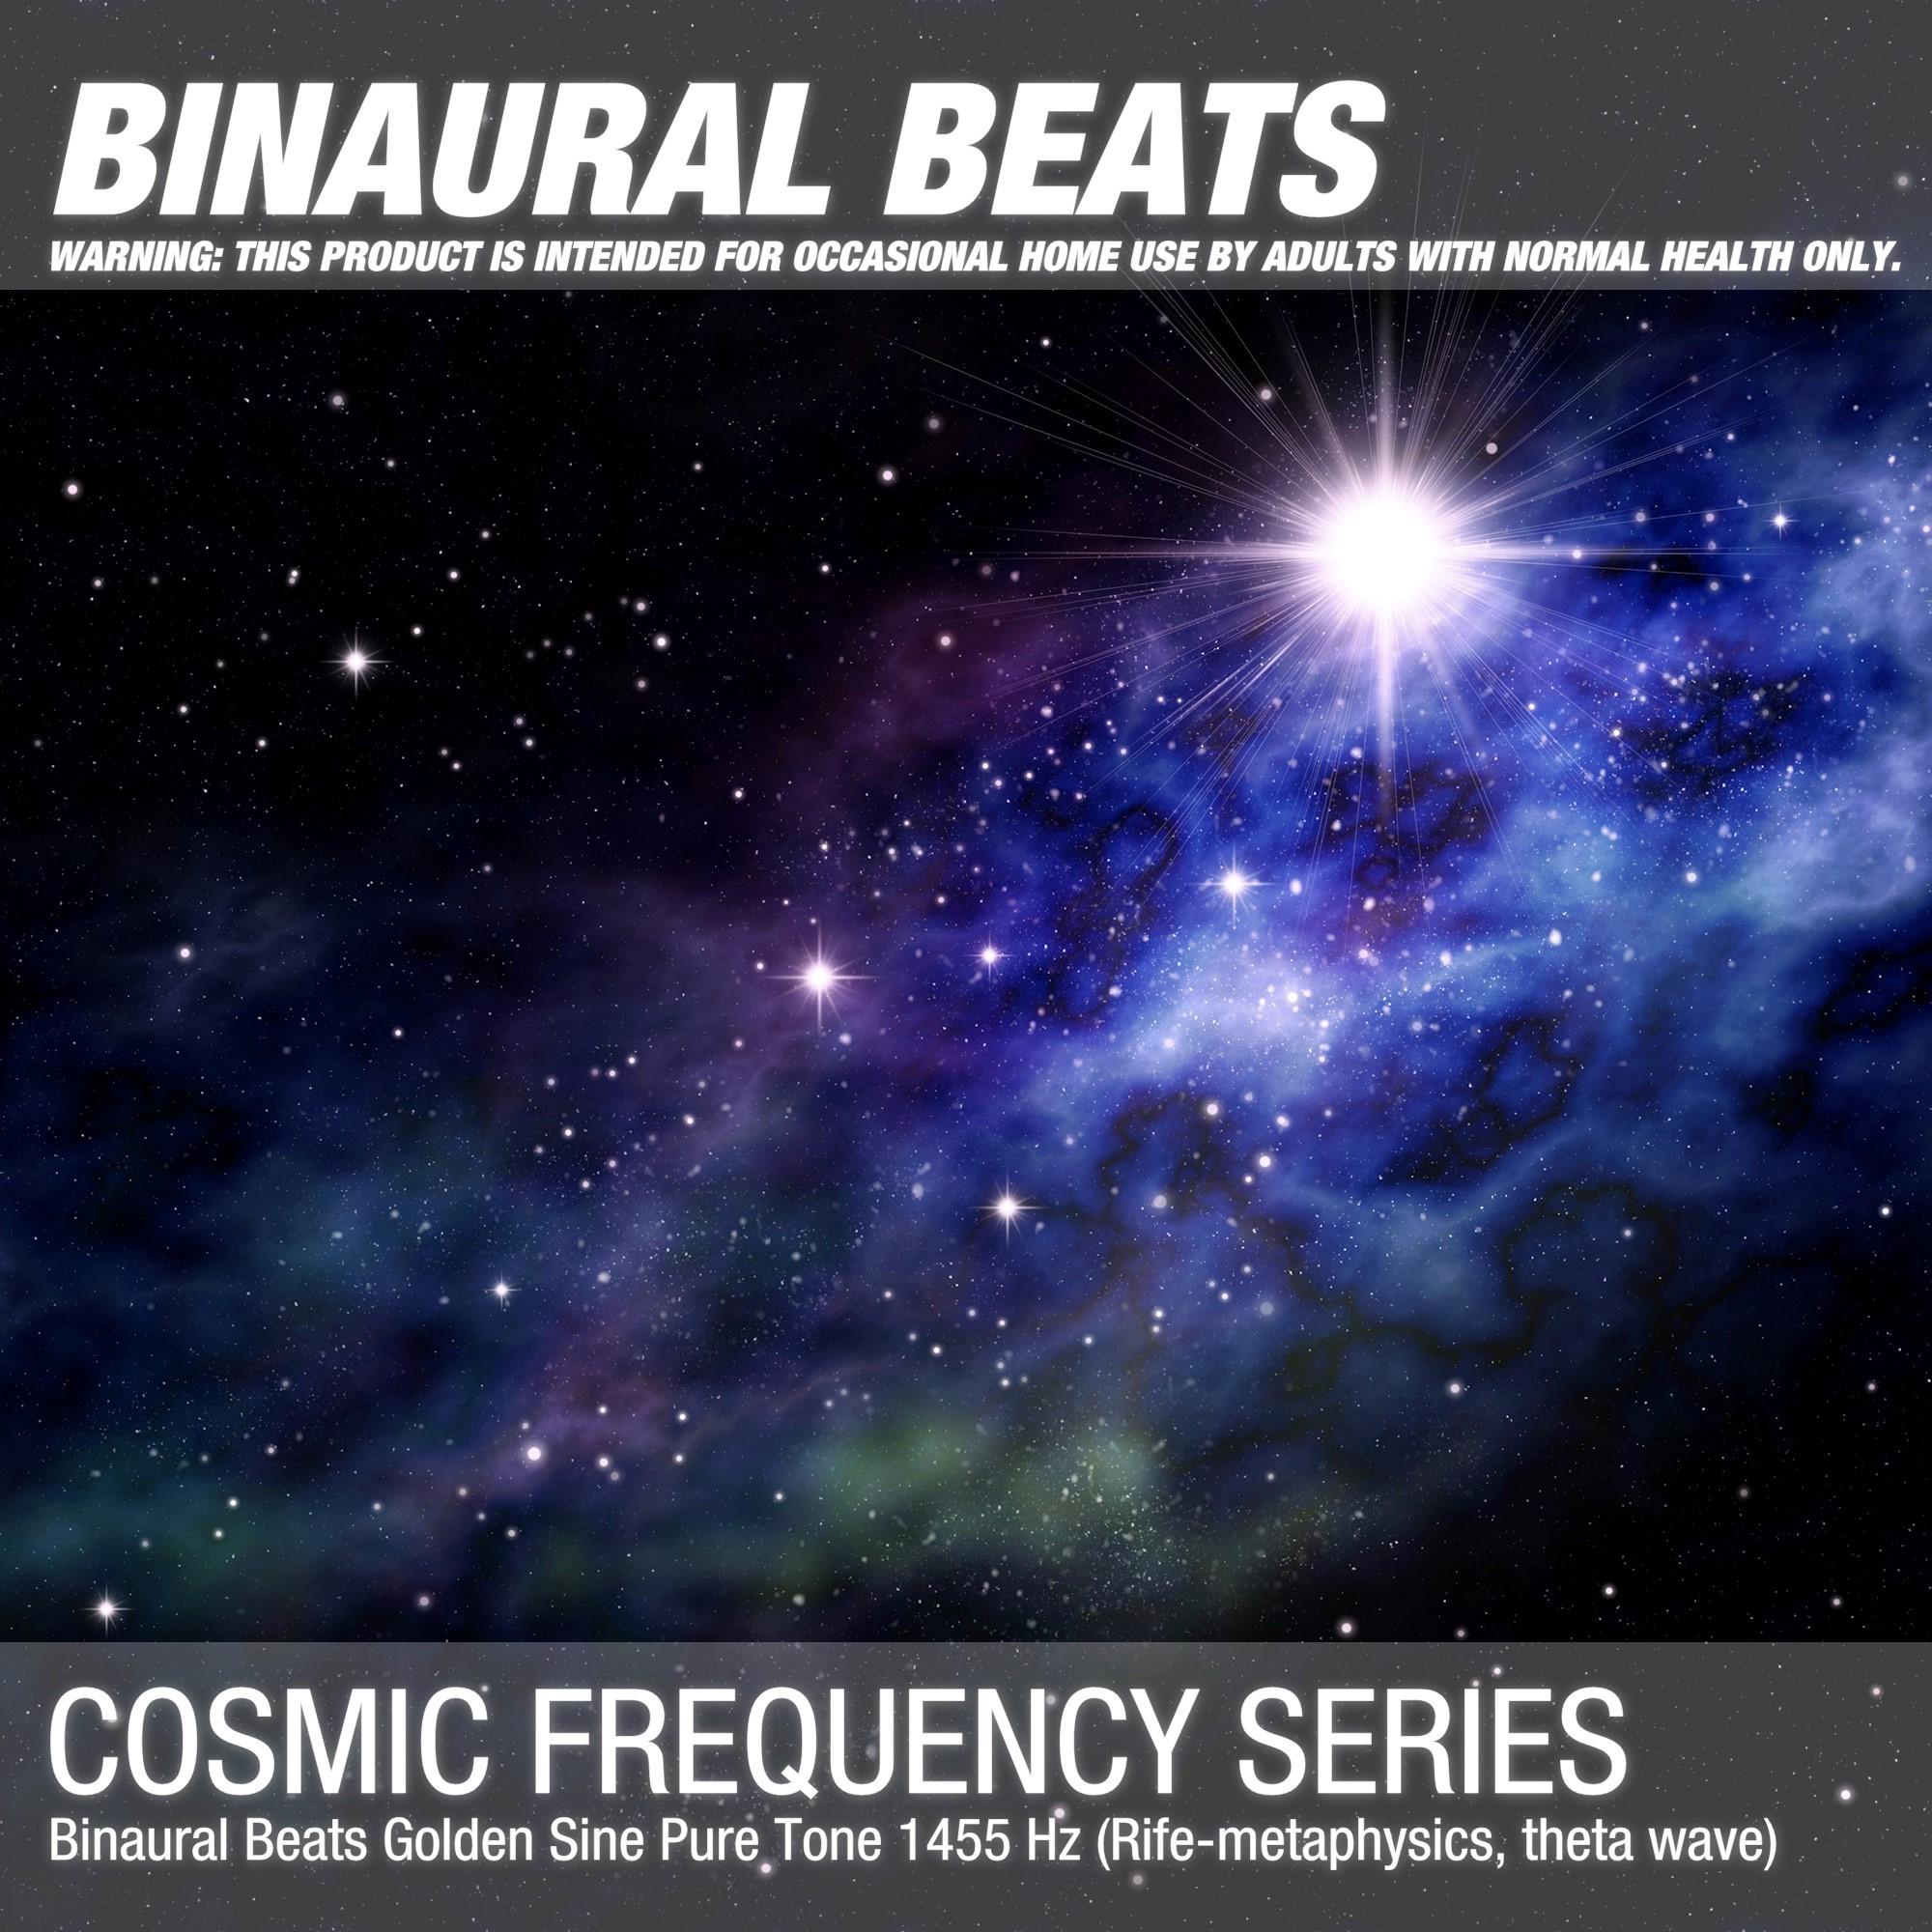 Binaural Beats Golden Sine Pure Tone 1455 Hz (Rife-metaphysics, theta wave)